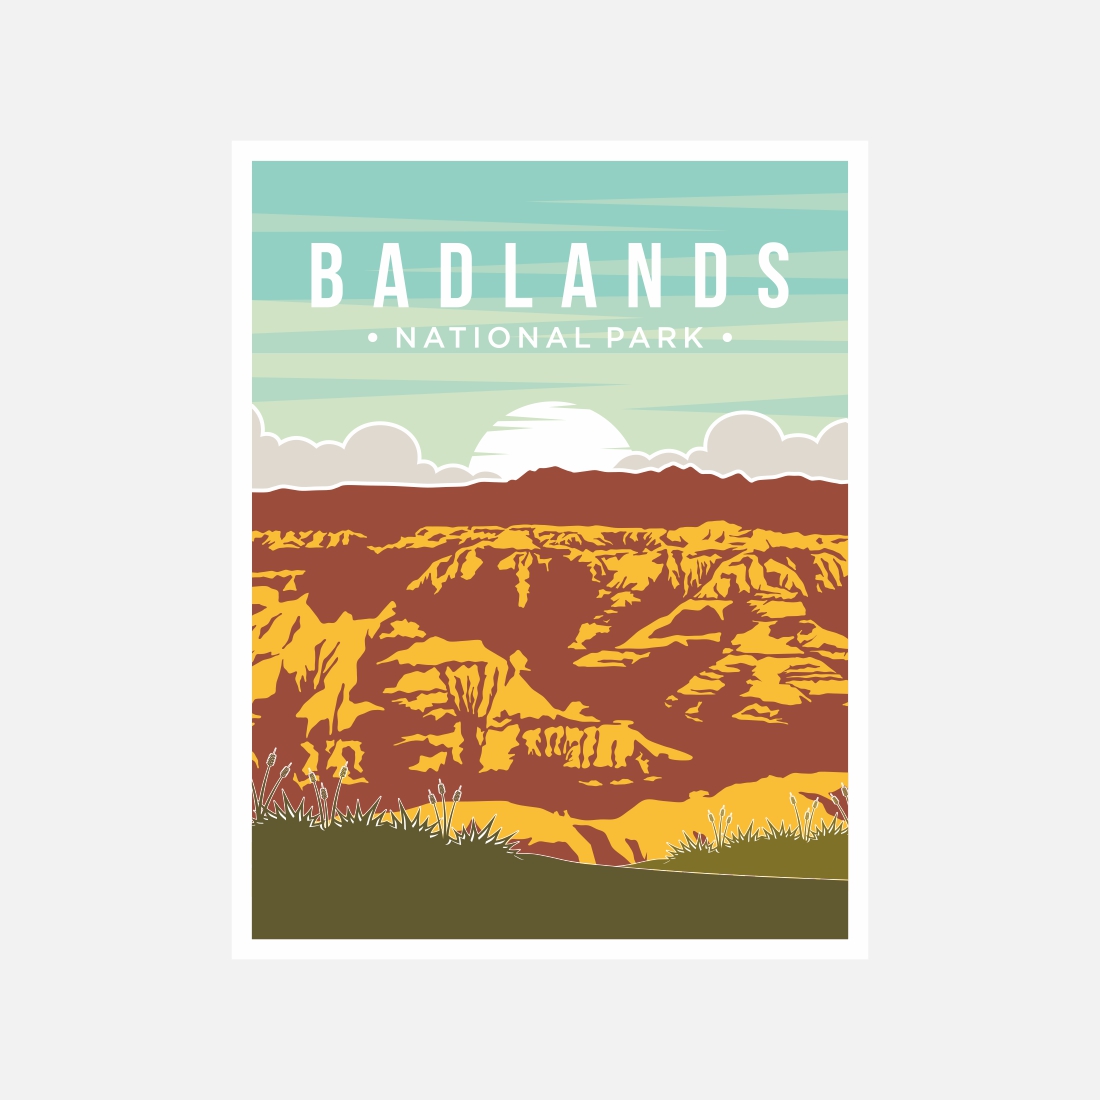 Badlands National Park poster vector illustration design - only $8 preview image.